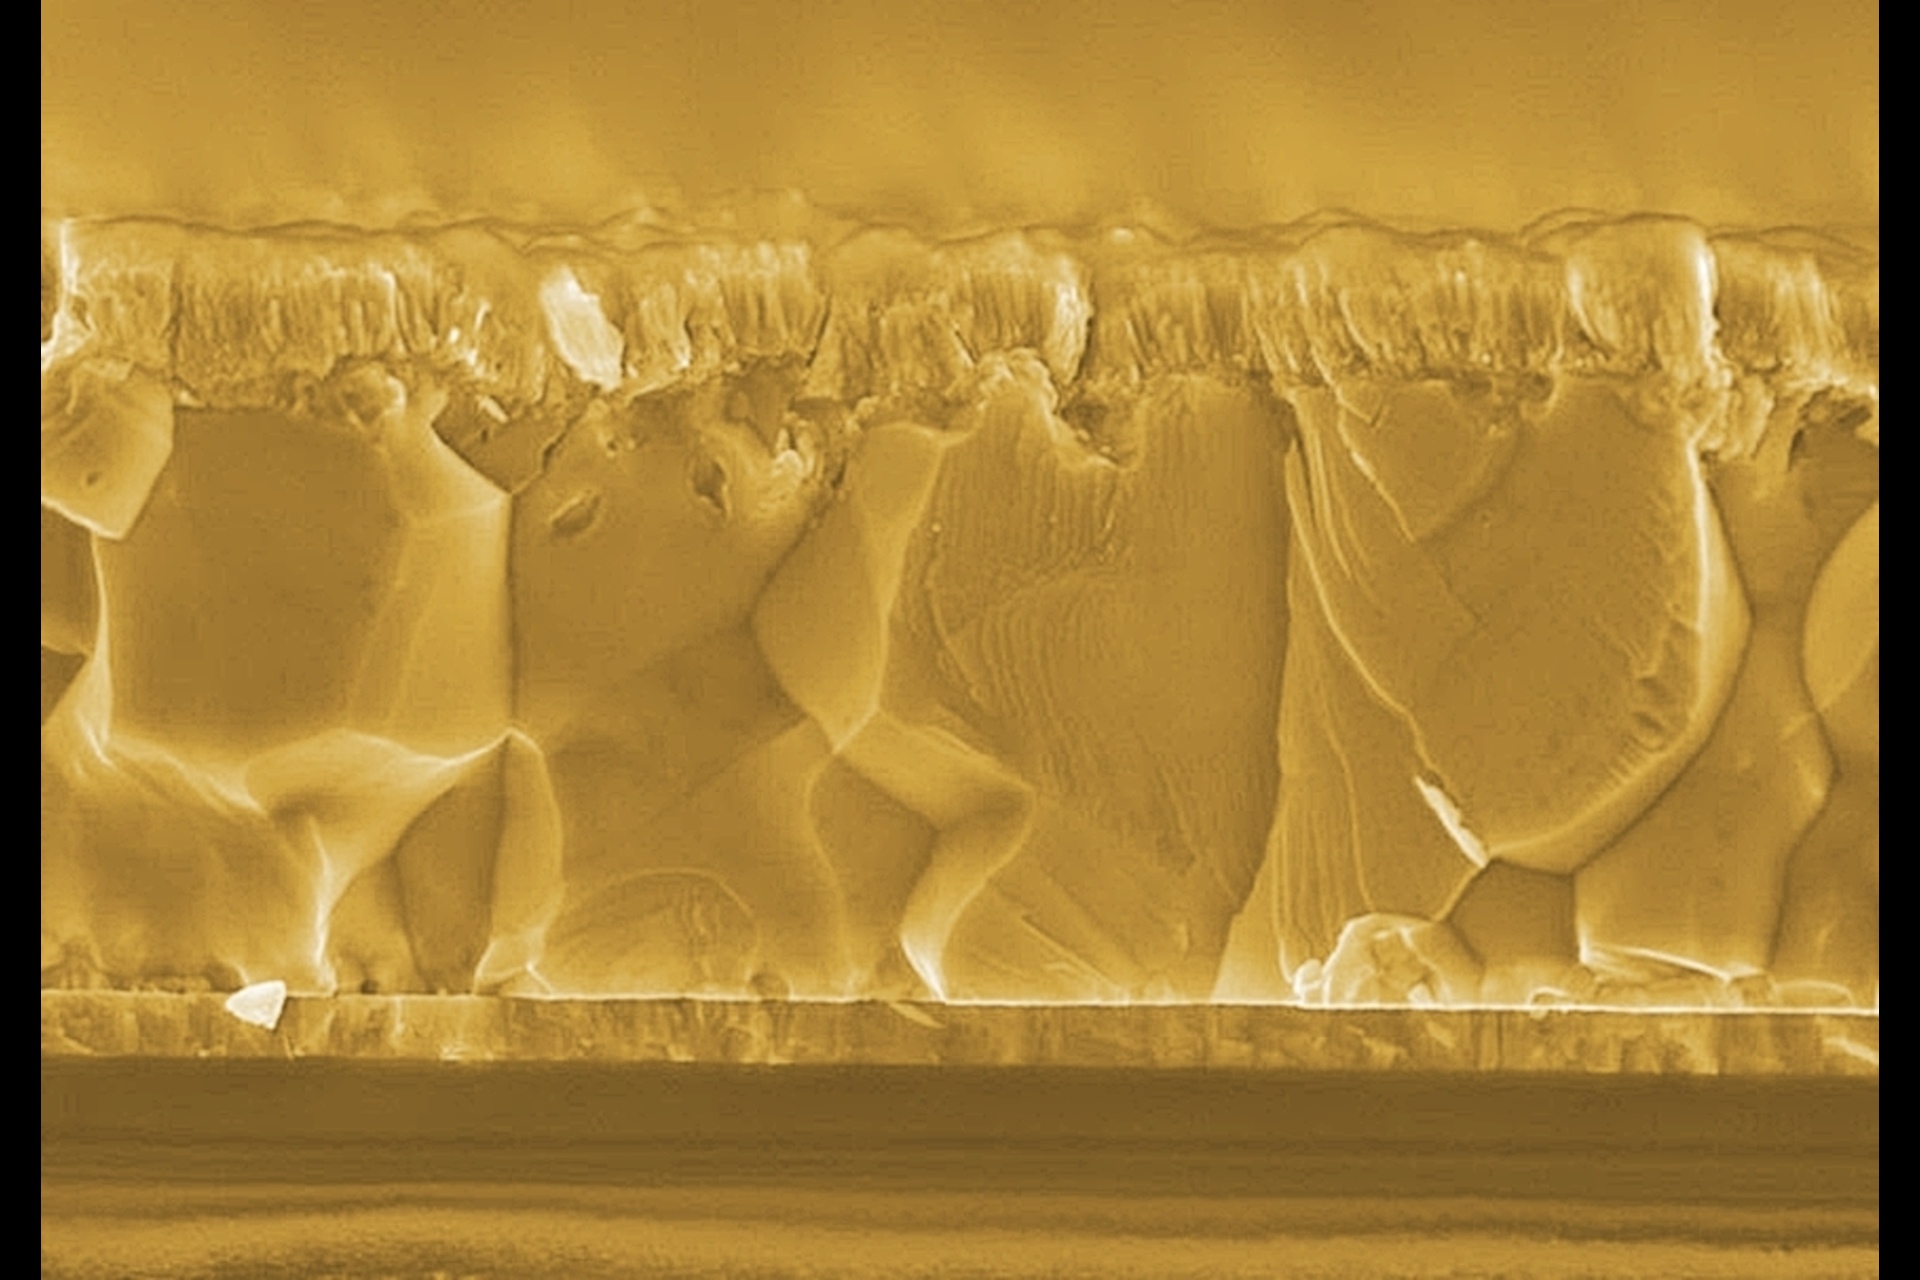 Celle solari bifacciali: le celle solari CIGS bifacciali sono costituite da strati molto sottili, soltanto 3 µm in totale per i materiali attivi: depositato sopra un contatto elettrico trasparente, lo strato policristallino CIGS assorbe la luce sia dal lato anteriore che da quello posteriore